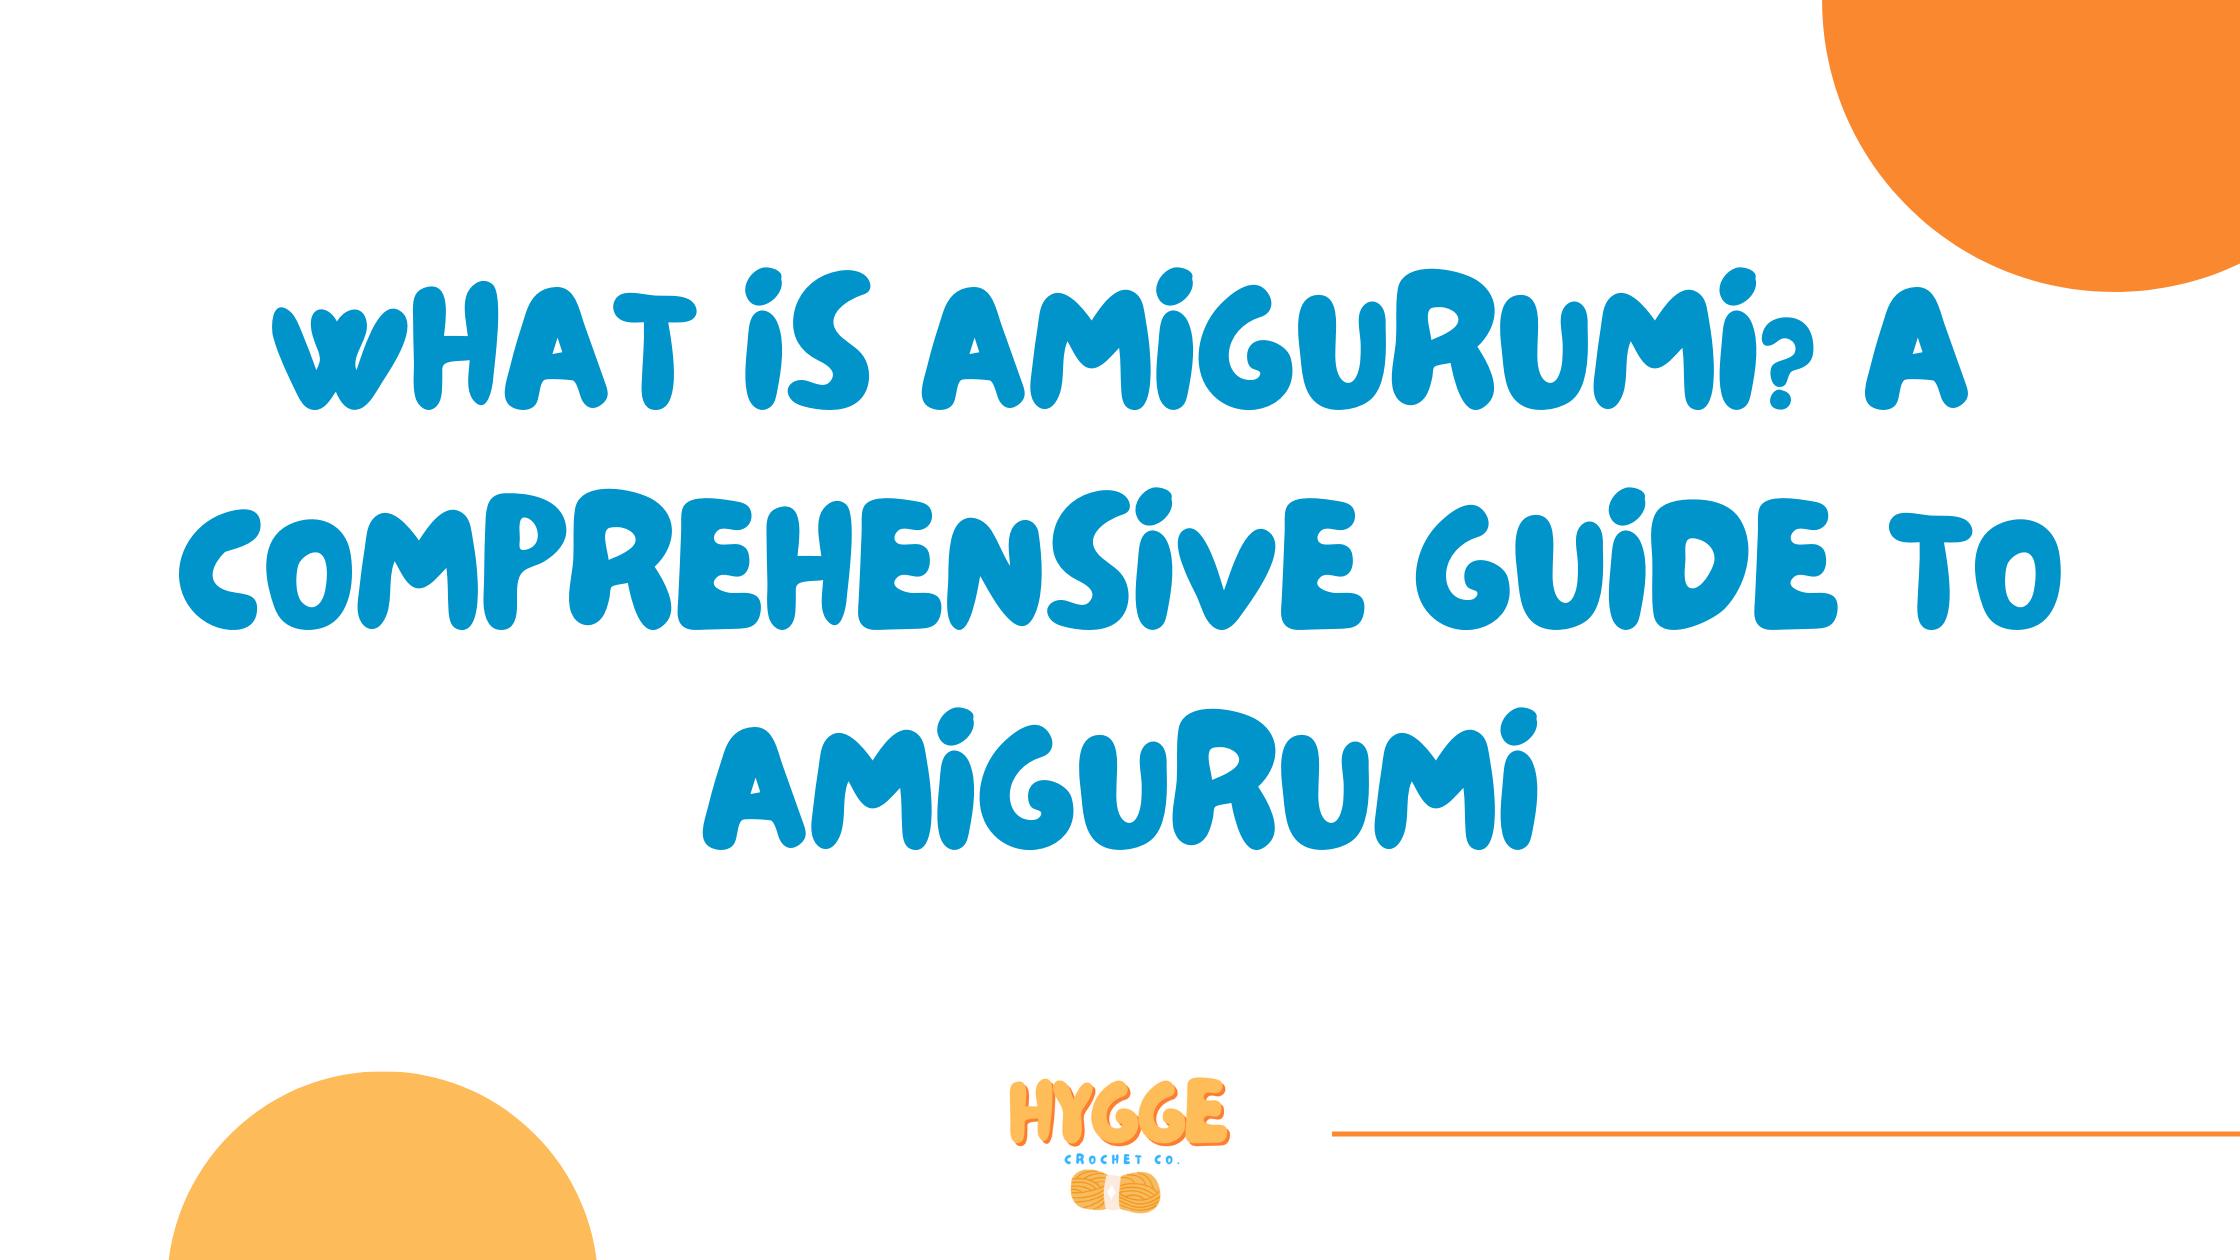 what is amigurumi? a comprehensice guide to amigurumi